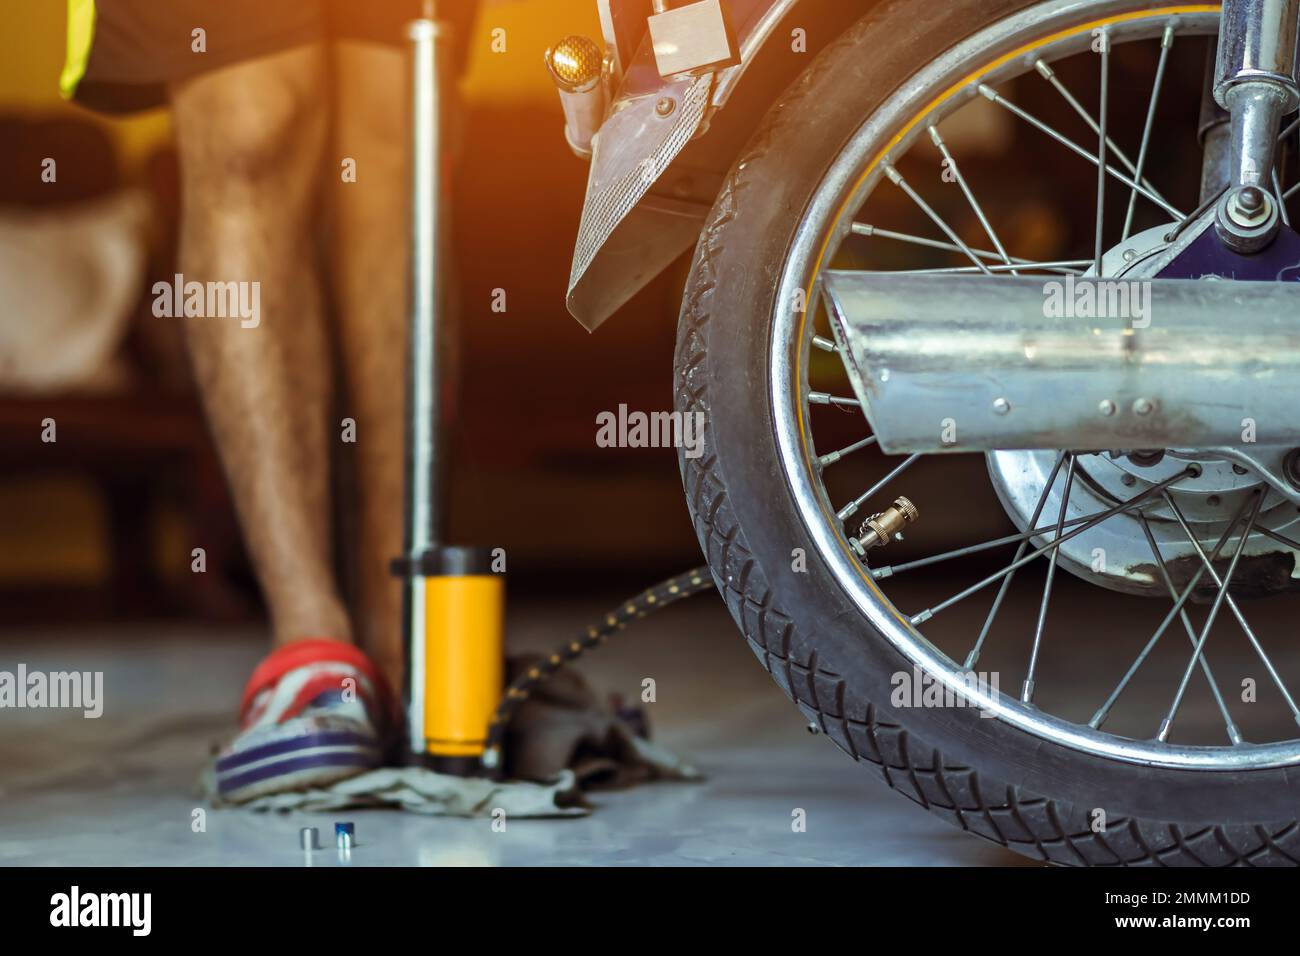 Der junge Mann überprüft den Druck des Gasgenerators und pumpt den Reifen  auf dem Motorrad mit der Fußbodenpumpe auf. Personen, die den Luftdruck  prüfen und den Reifendruck auffüllen Stockfotografie - Alamy